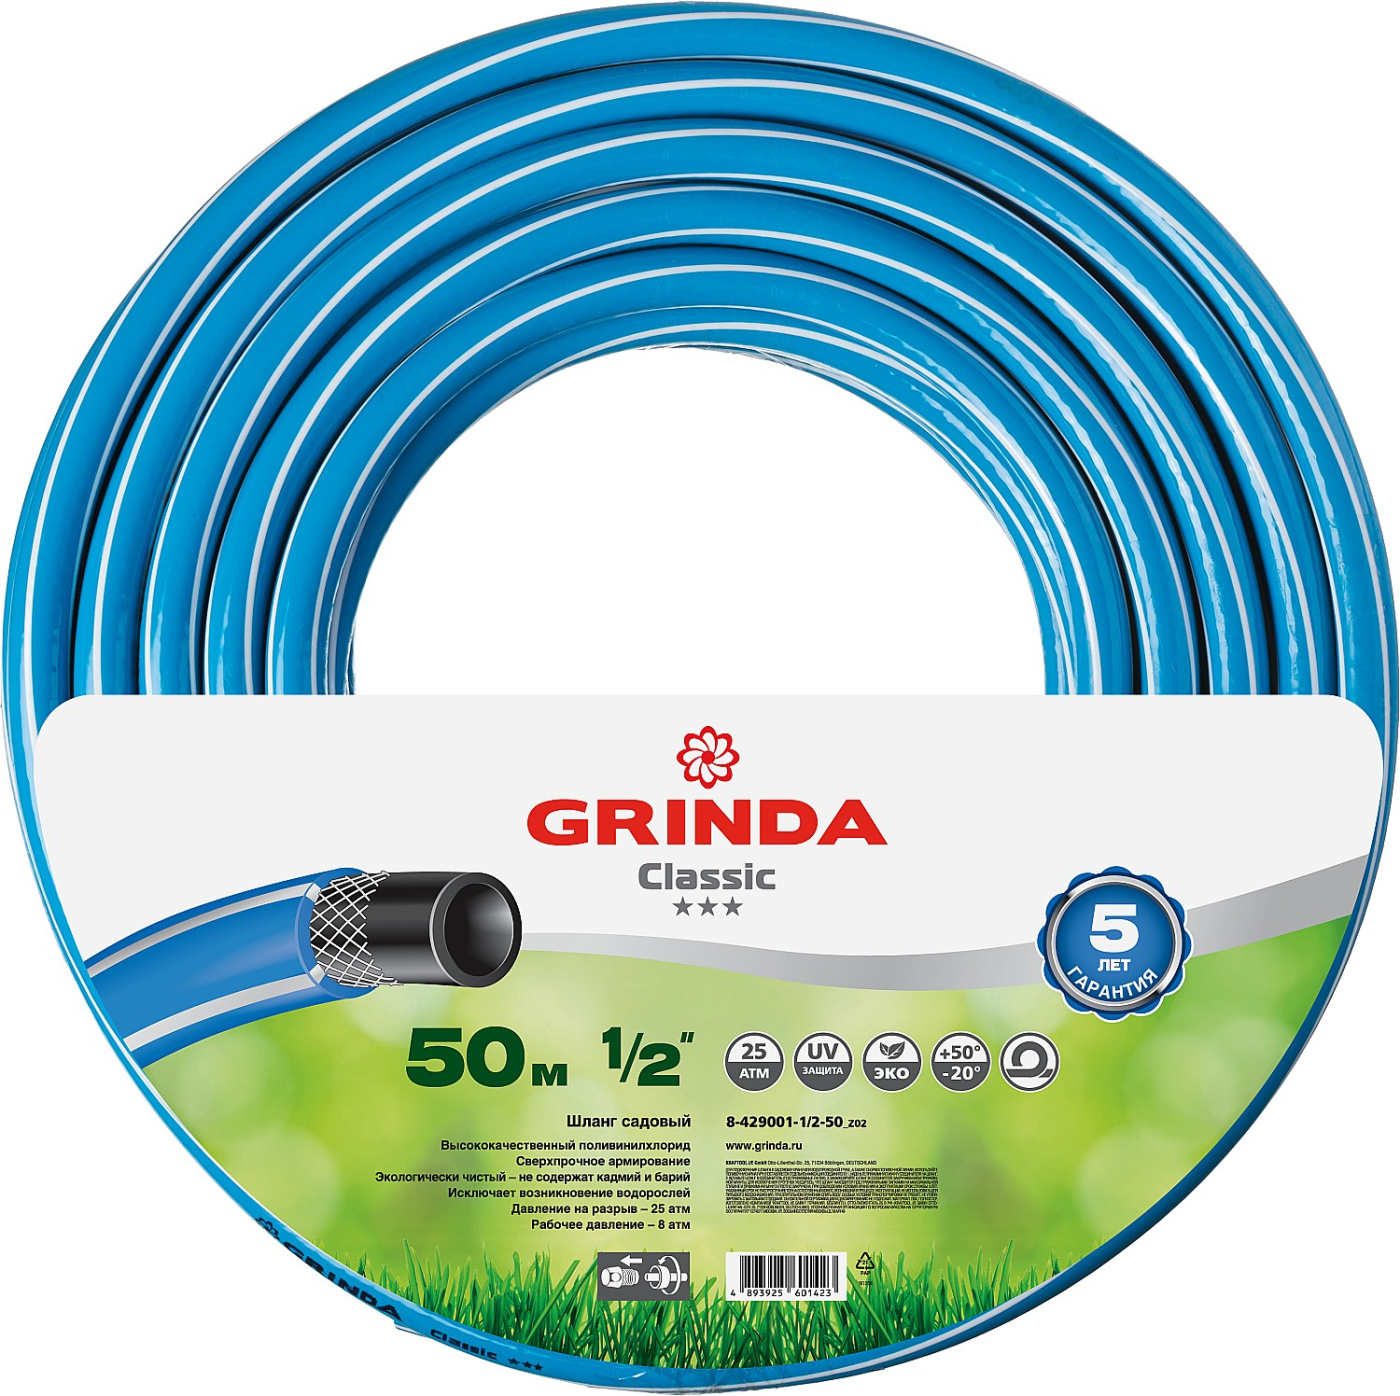 GRINDA Classic, 1/2″, 50 м, 25 атм, трёхслойный, армированный, сетчатое армирование полиамидной нитью, поливочный шланг (8-429001-1/2-50)